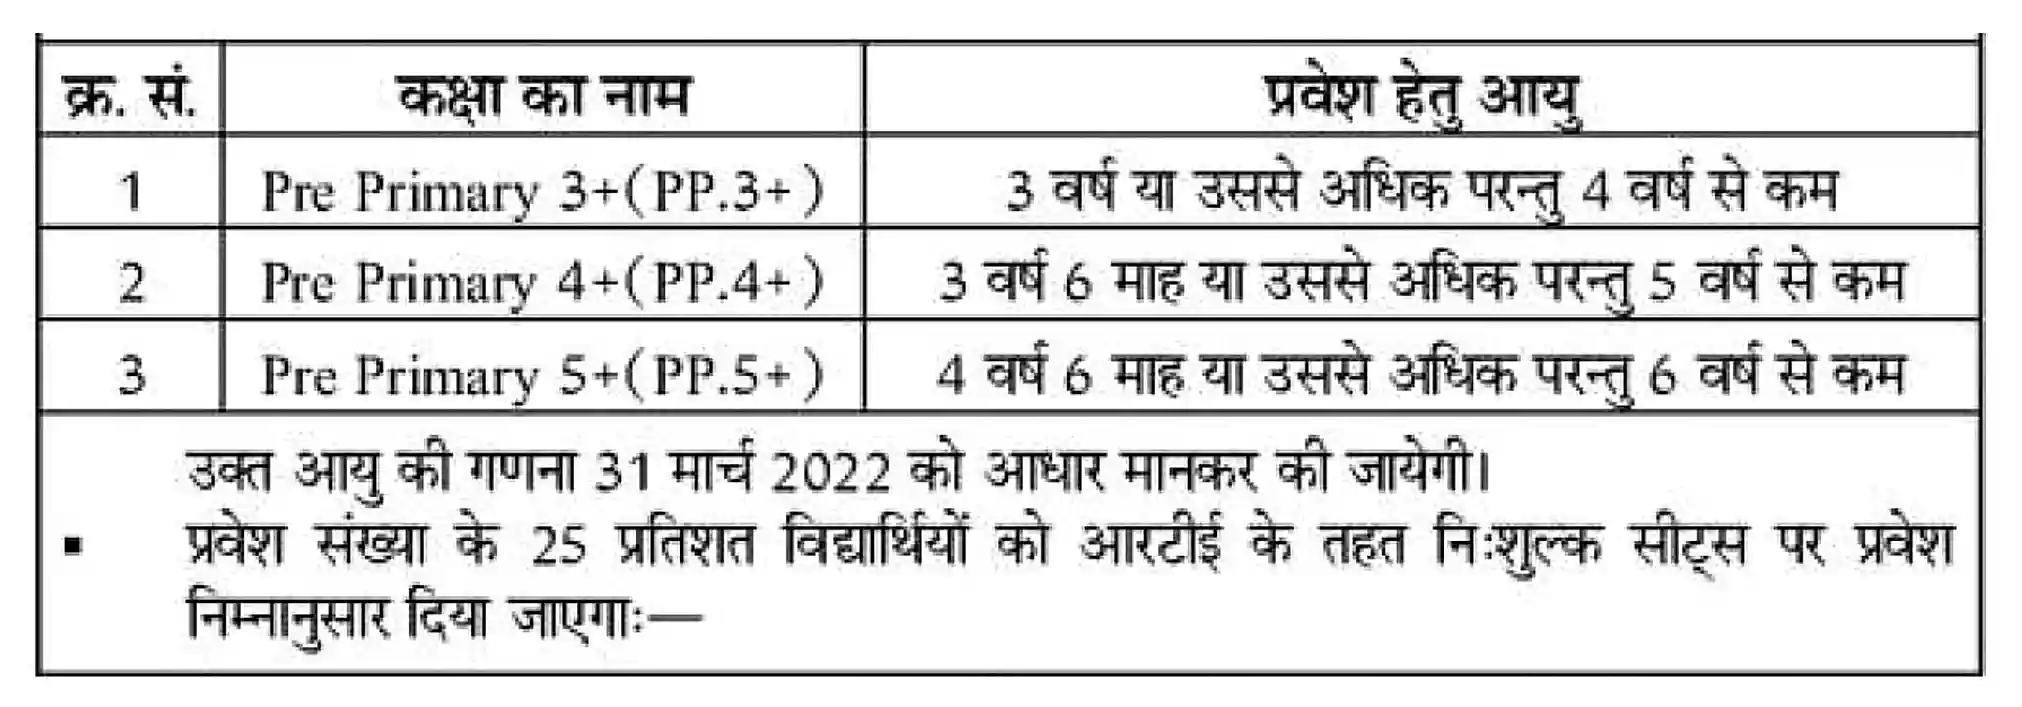 RTE Rajasthan School Admission 2023 राजस्थान आरटीई के तहत प्राइवेट स्कूलों में निशुल्क शिक्षा हेतु एडमिशन का नोटिस जारी